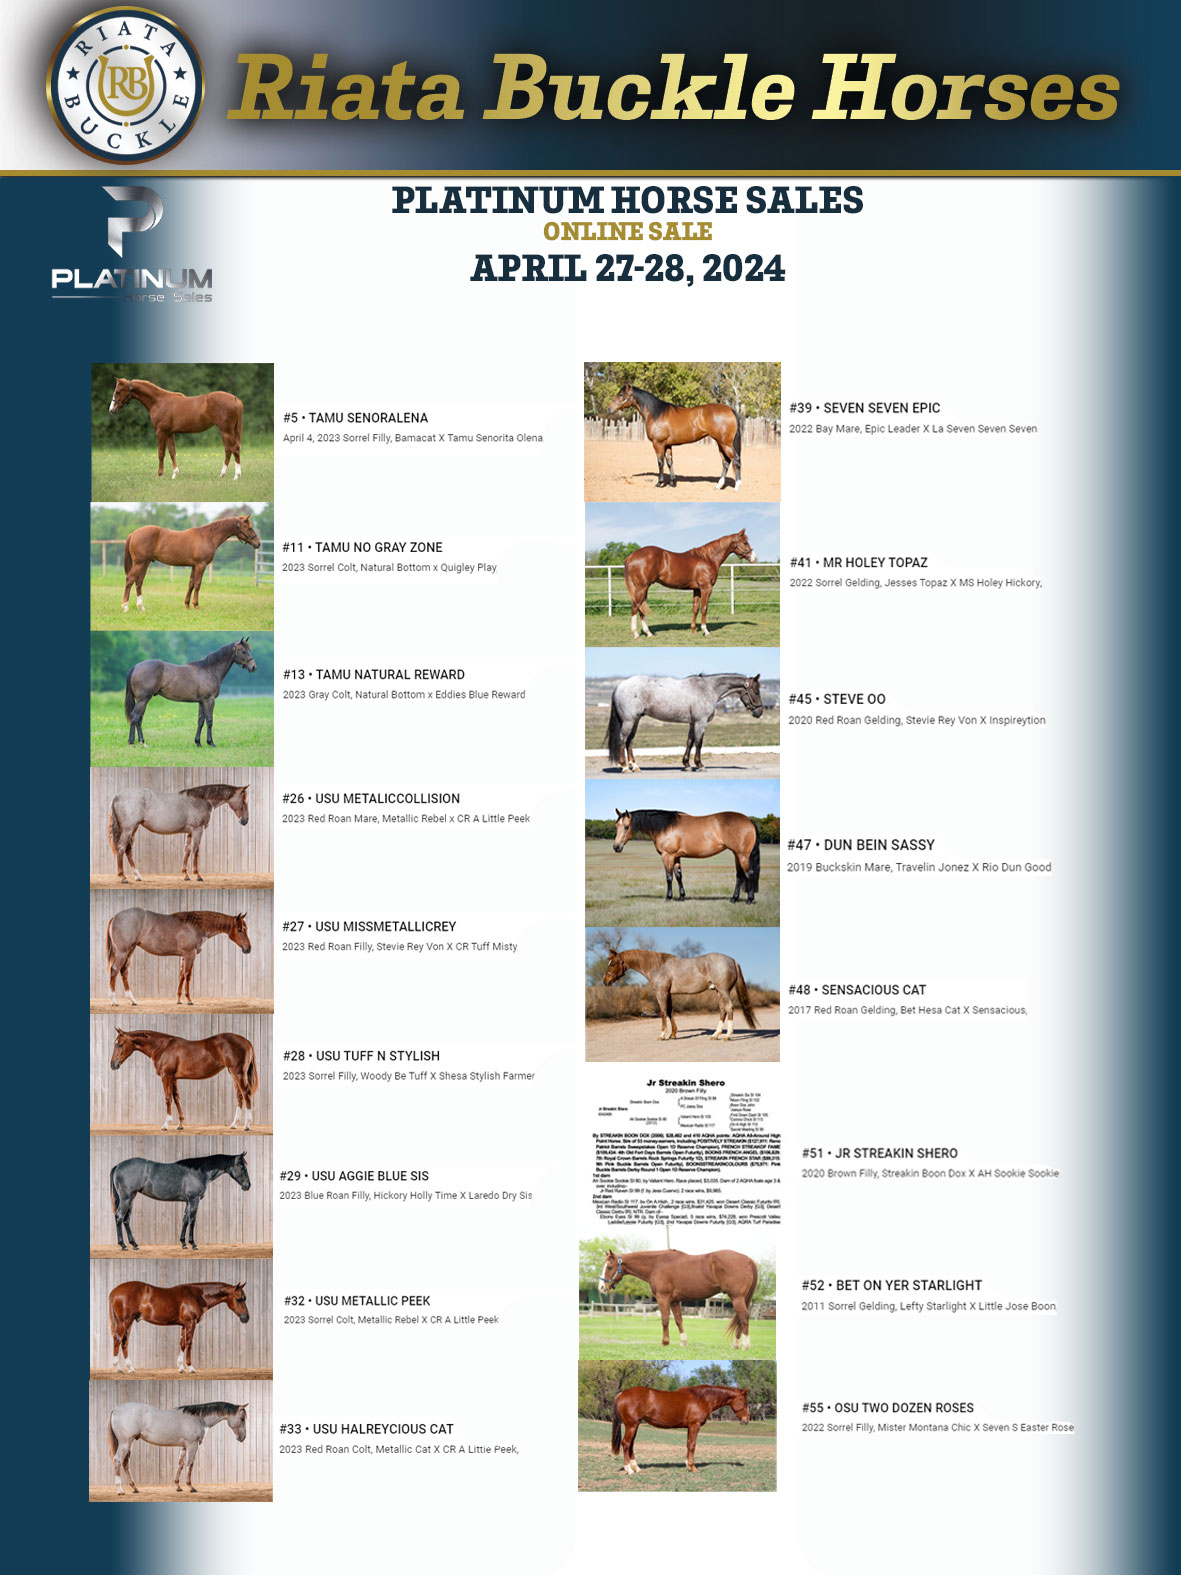 Event Ad for Platinum Horse Sales